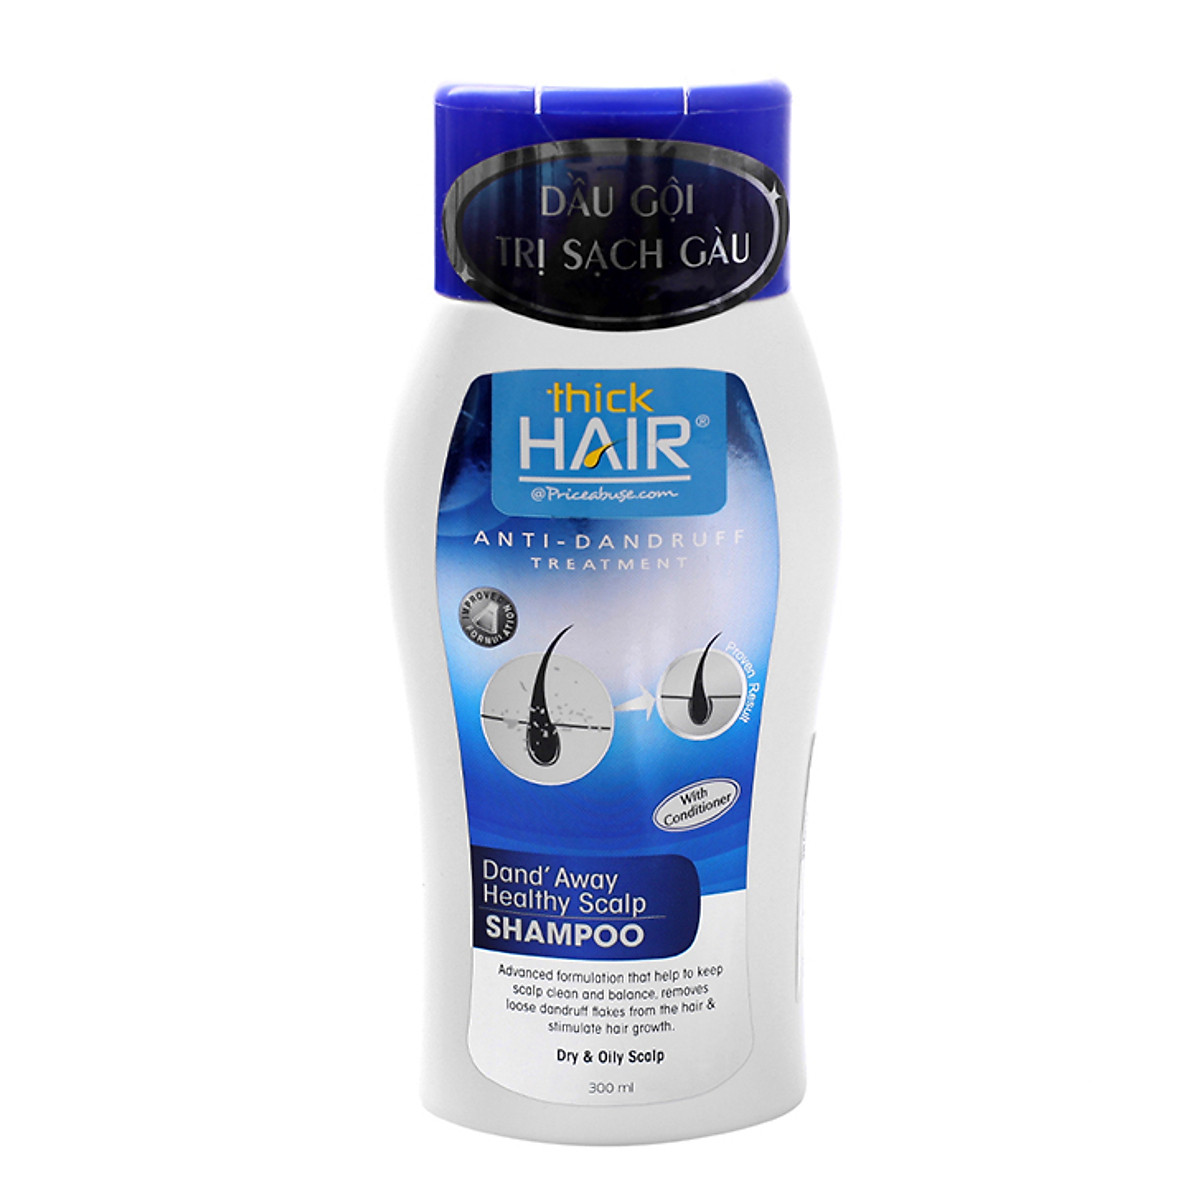 Mua Dầu Gội Hỗ Trợ Trị Gàu Thick Hair Anti-Dandruff Treatment Dand' Away  Healthy Scalp Shampoo - 0240 (300ml)